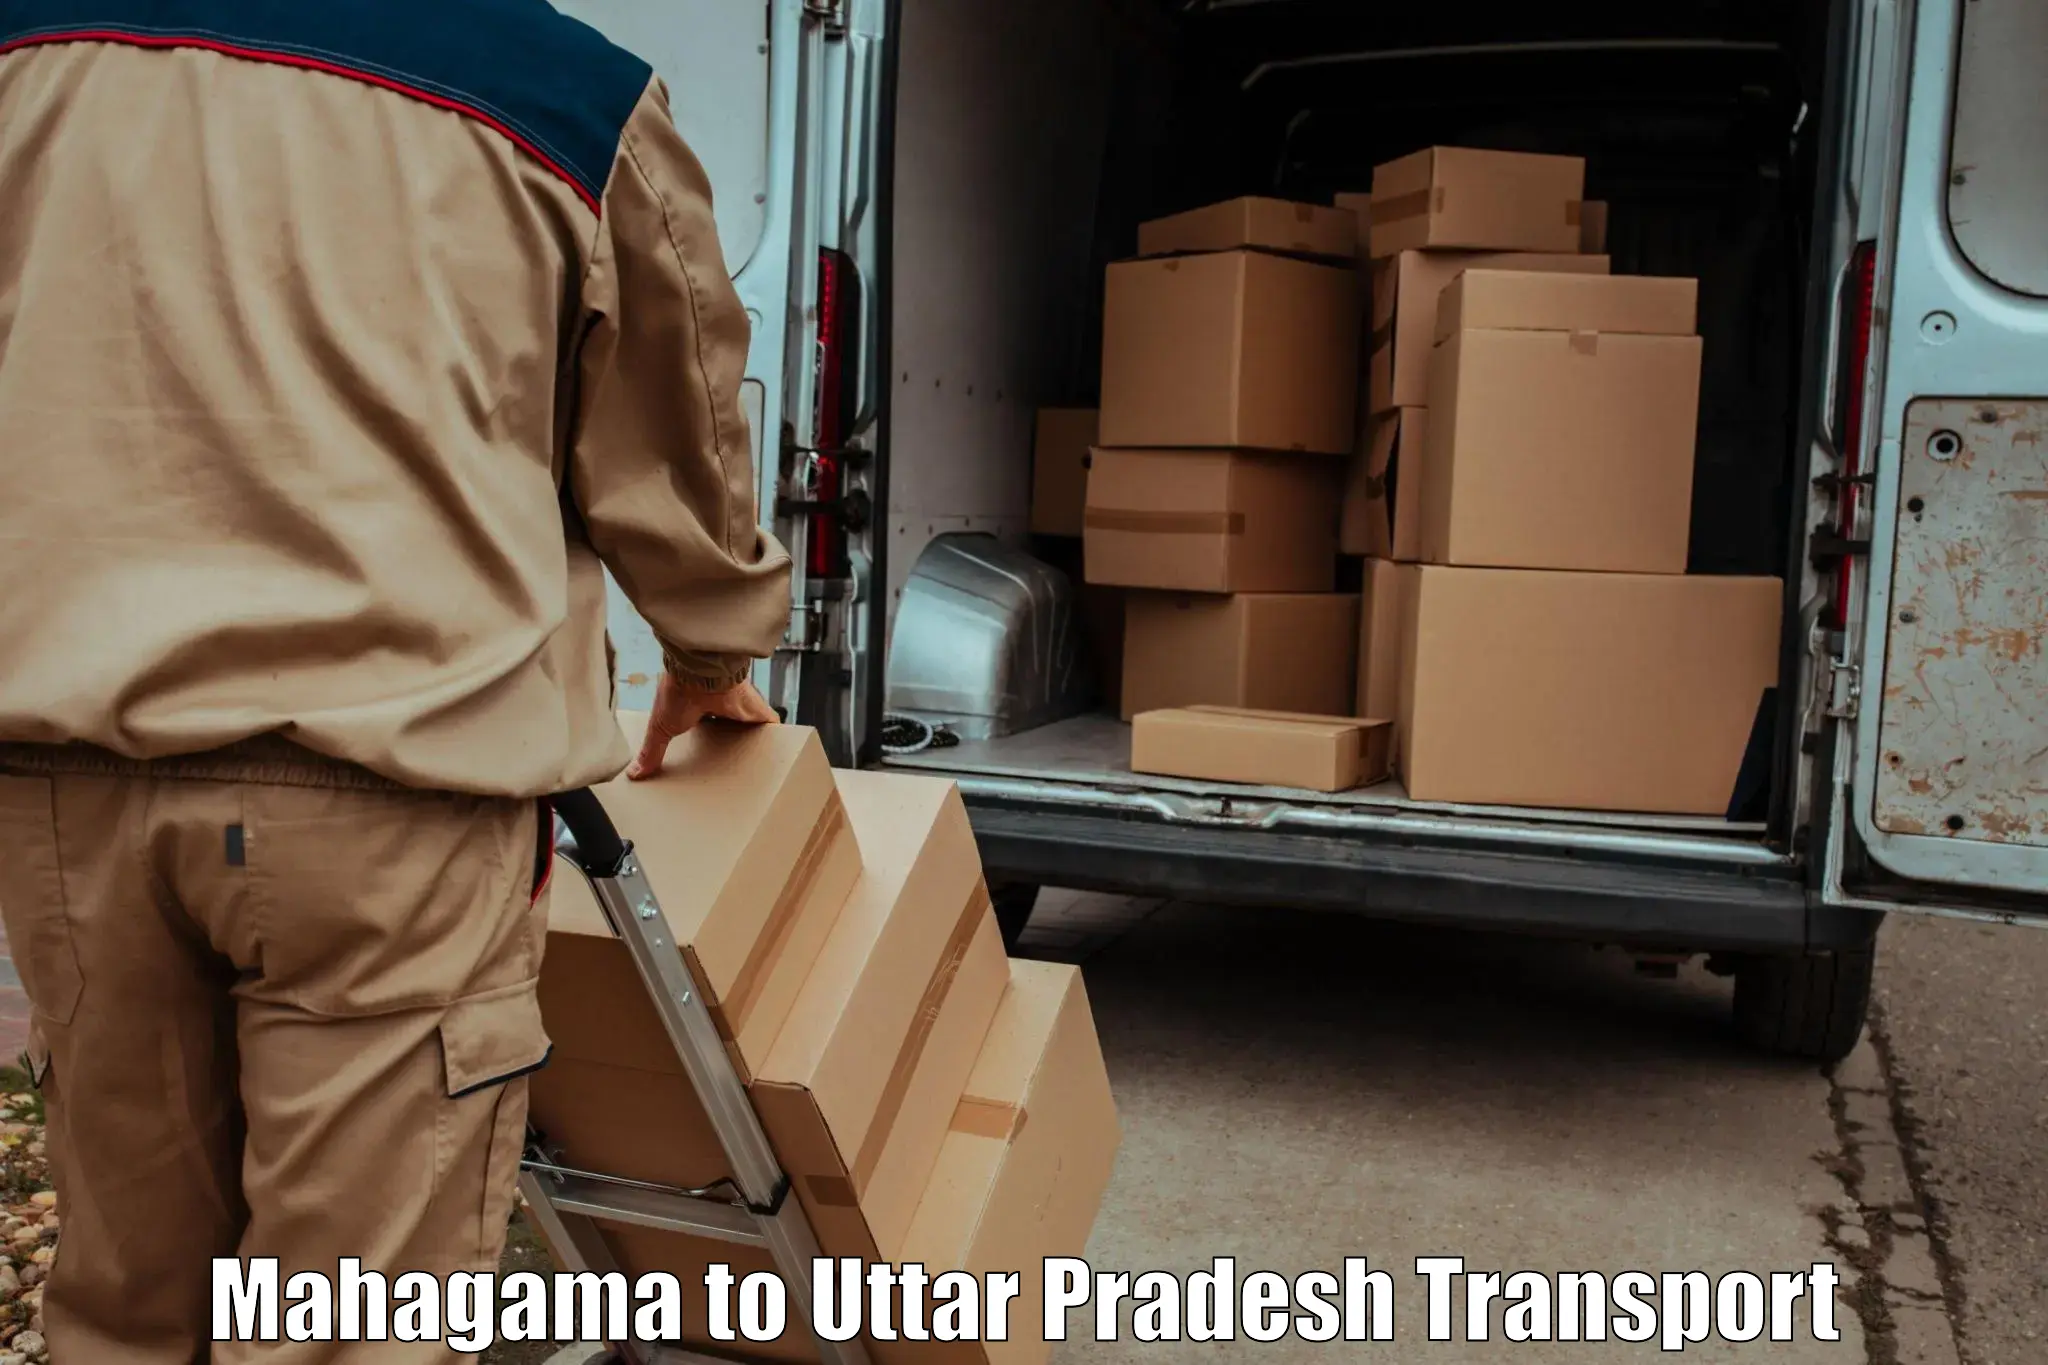 Cargo train transport services Mahagama to Malihabad